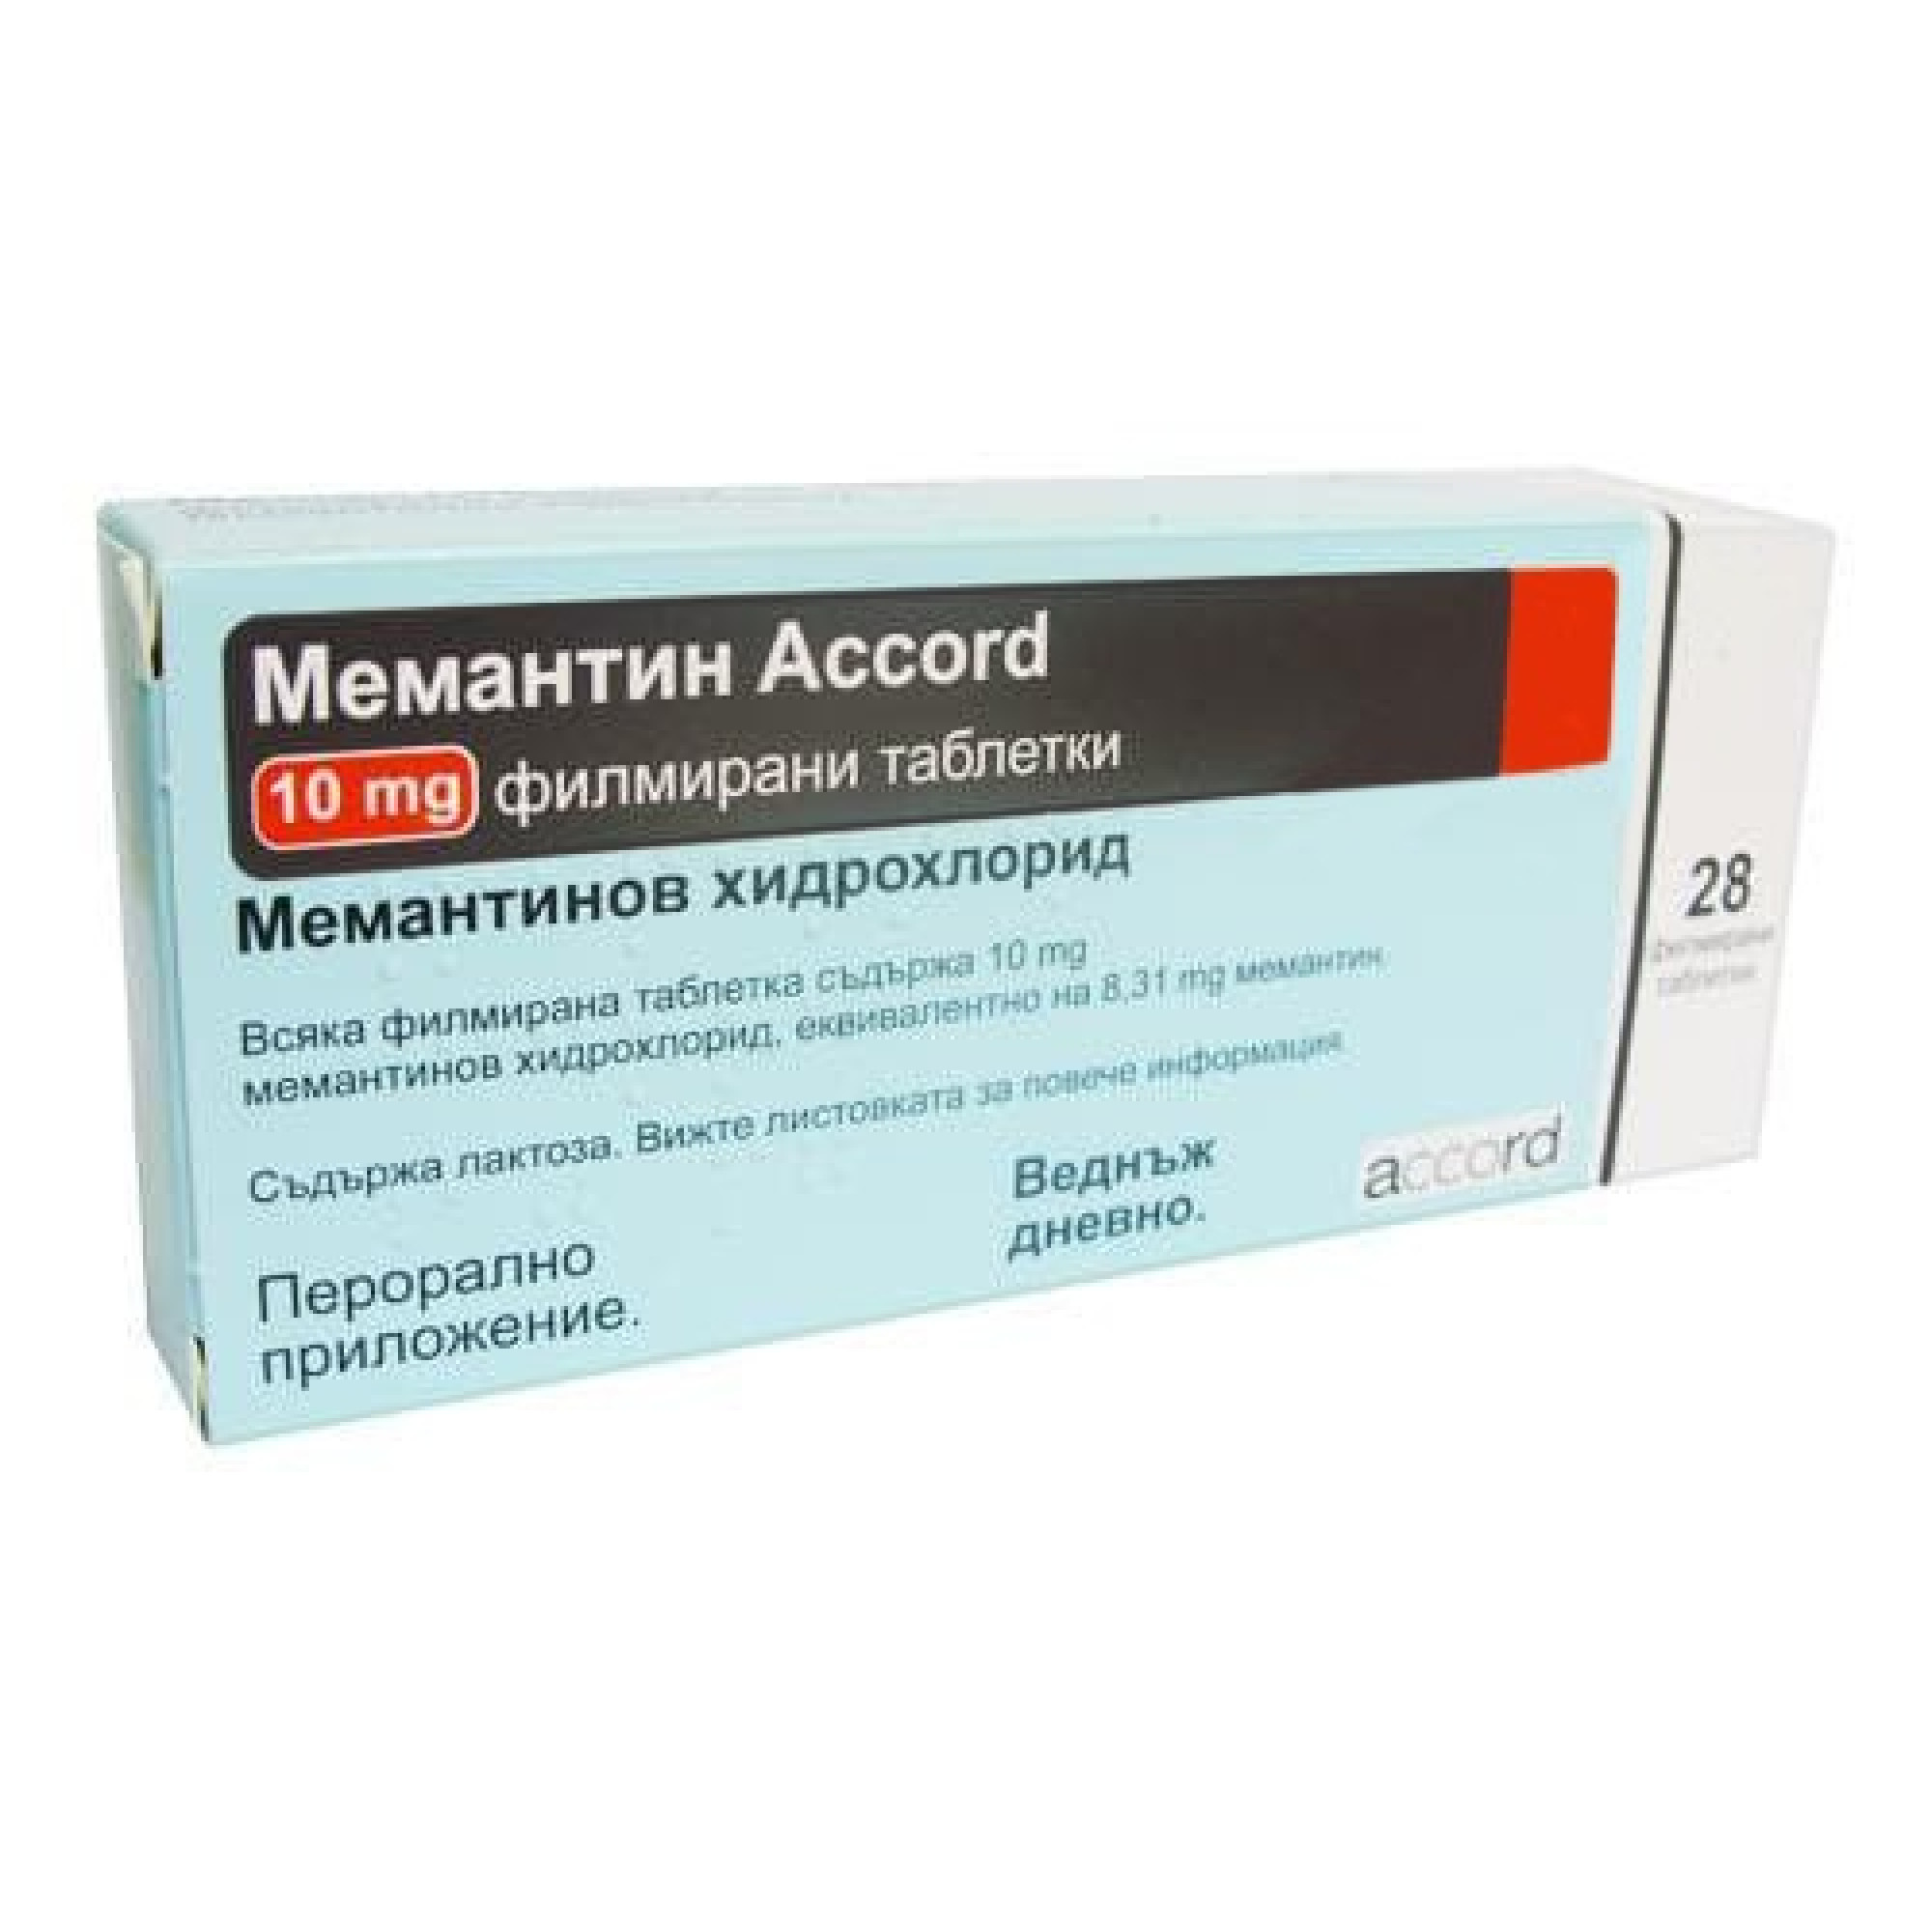 МЕМАНТИН АКОРД табл 10 мг х 28 бр | Аптека Феникс